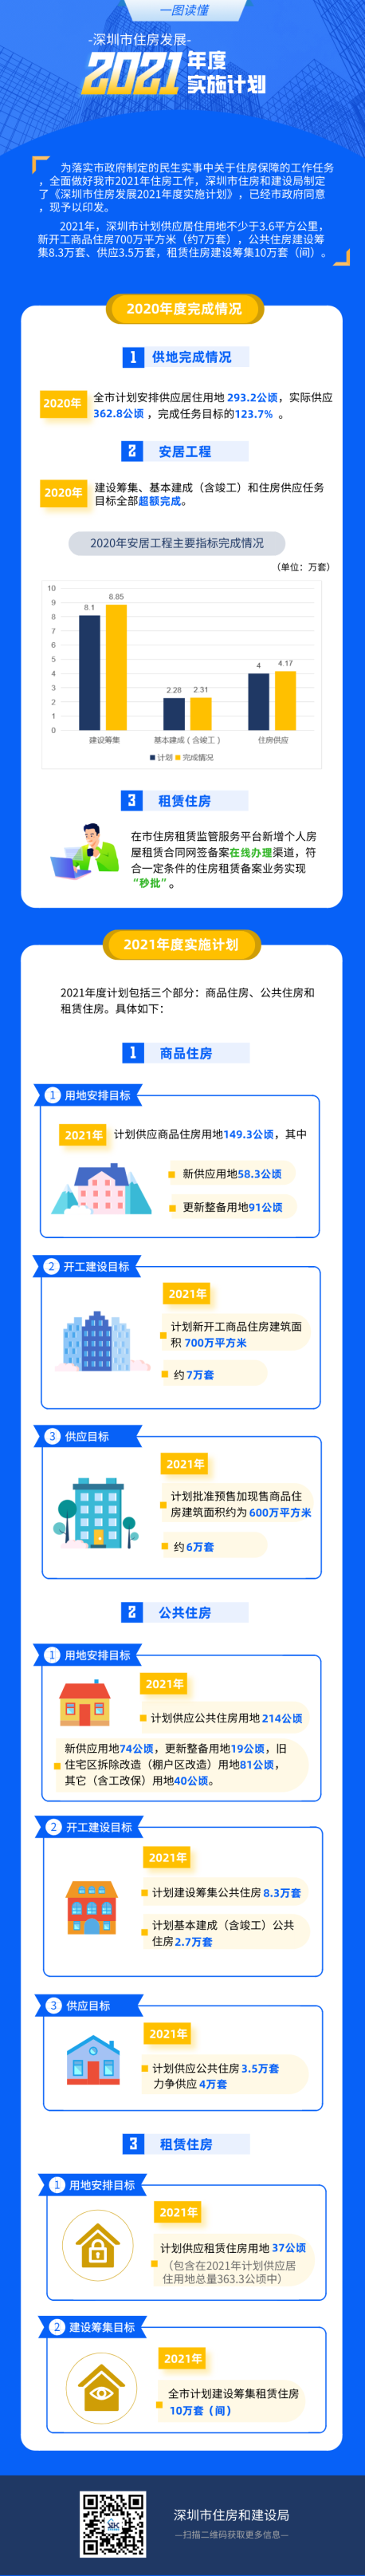 2021年深圳住房计划公布 计划建设筹集租赁住房10万套